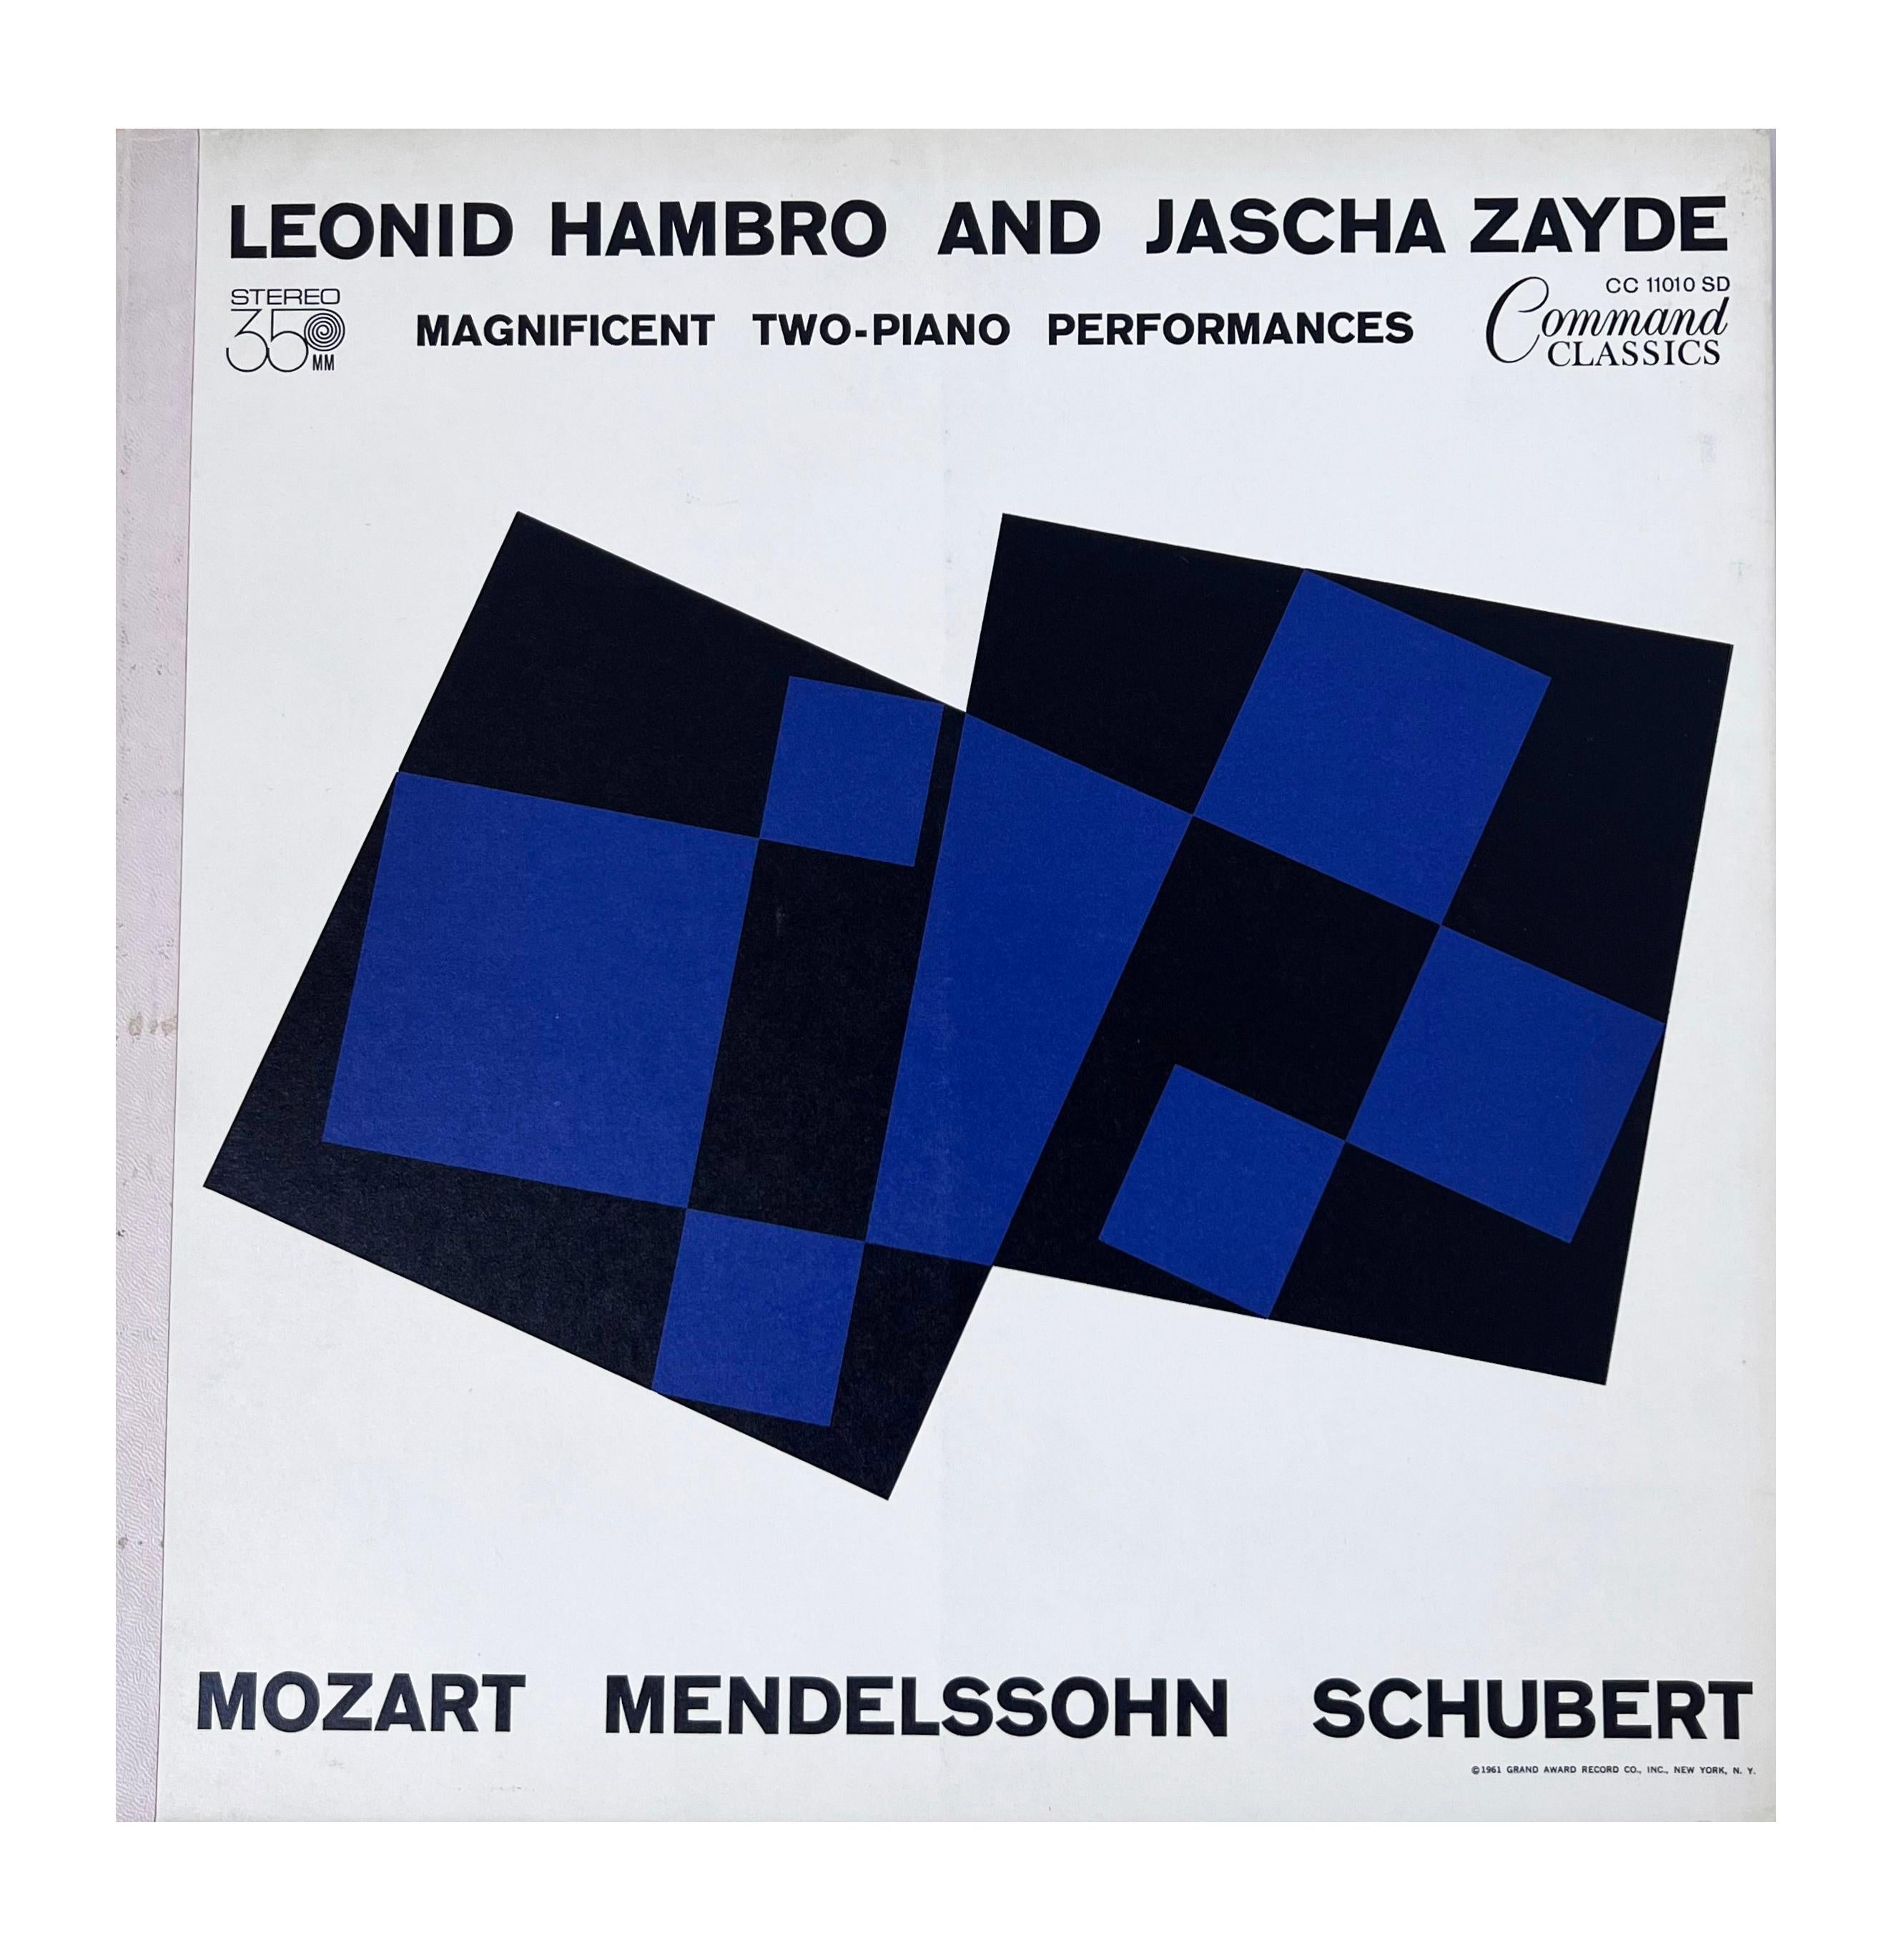 1950s Josef Albers record cover art: set of 7 works (Albers album art) 2